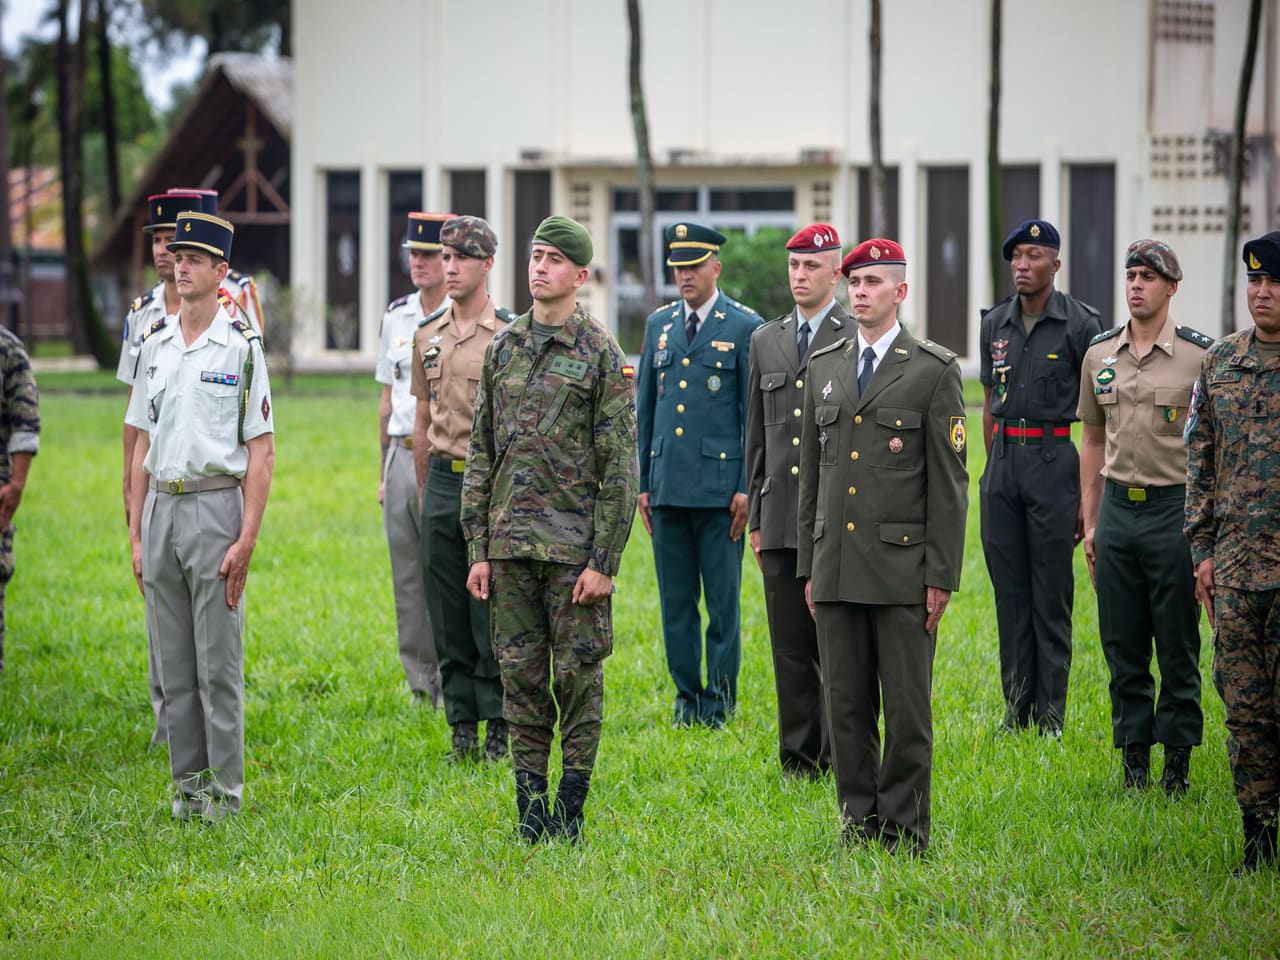 Exército do Brasil intensifica operações perto da Guiana e